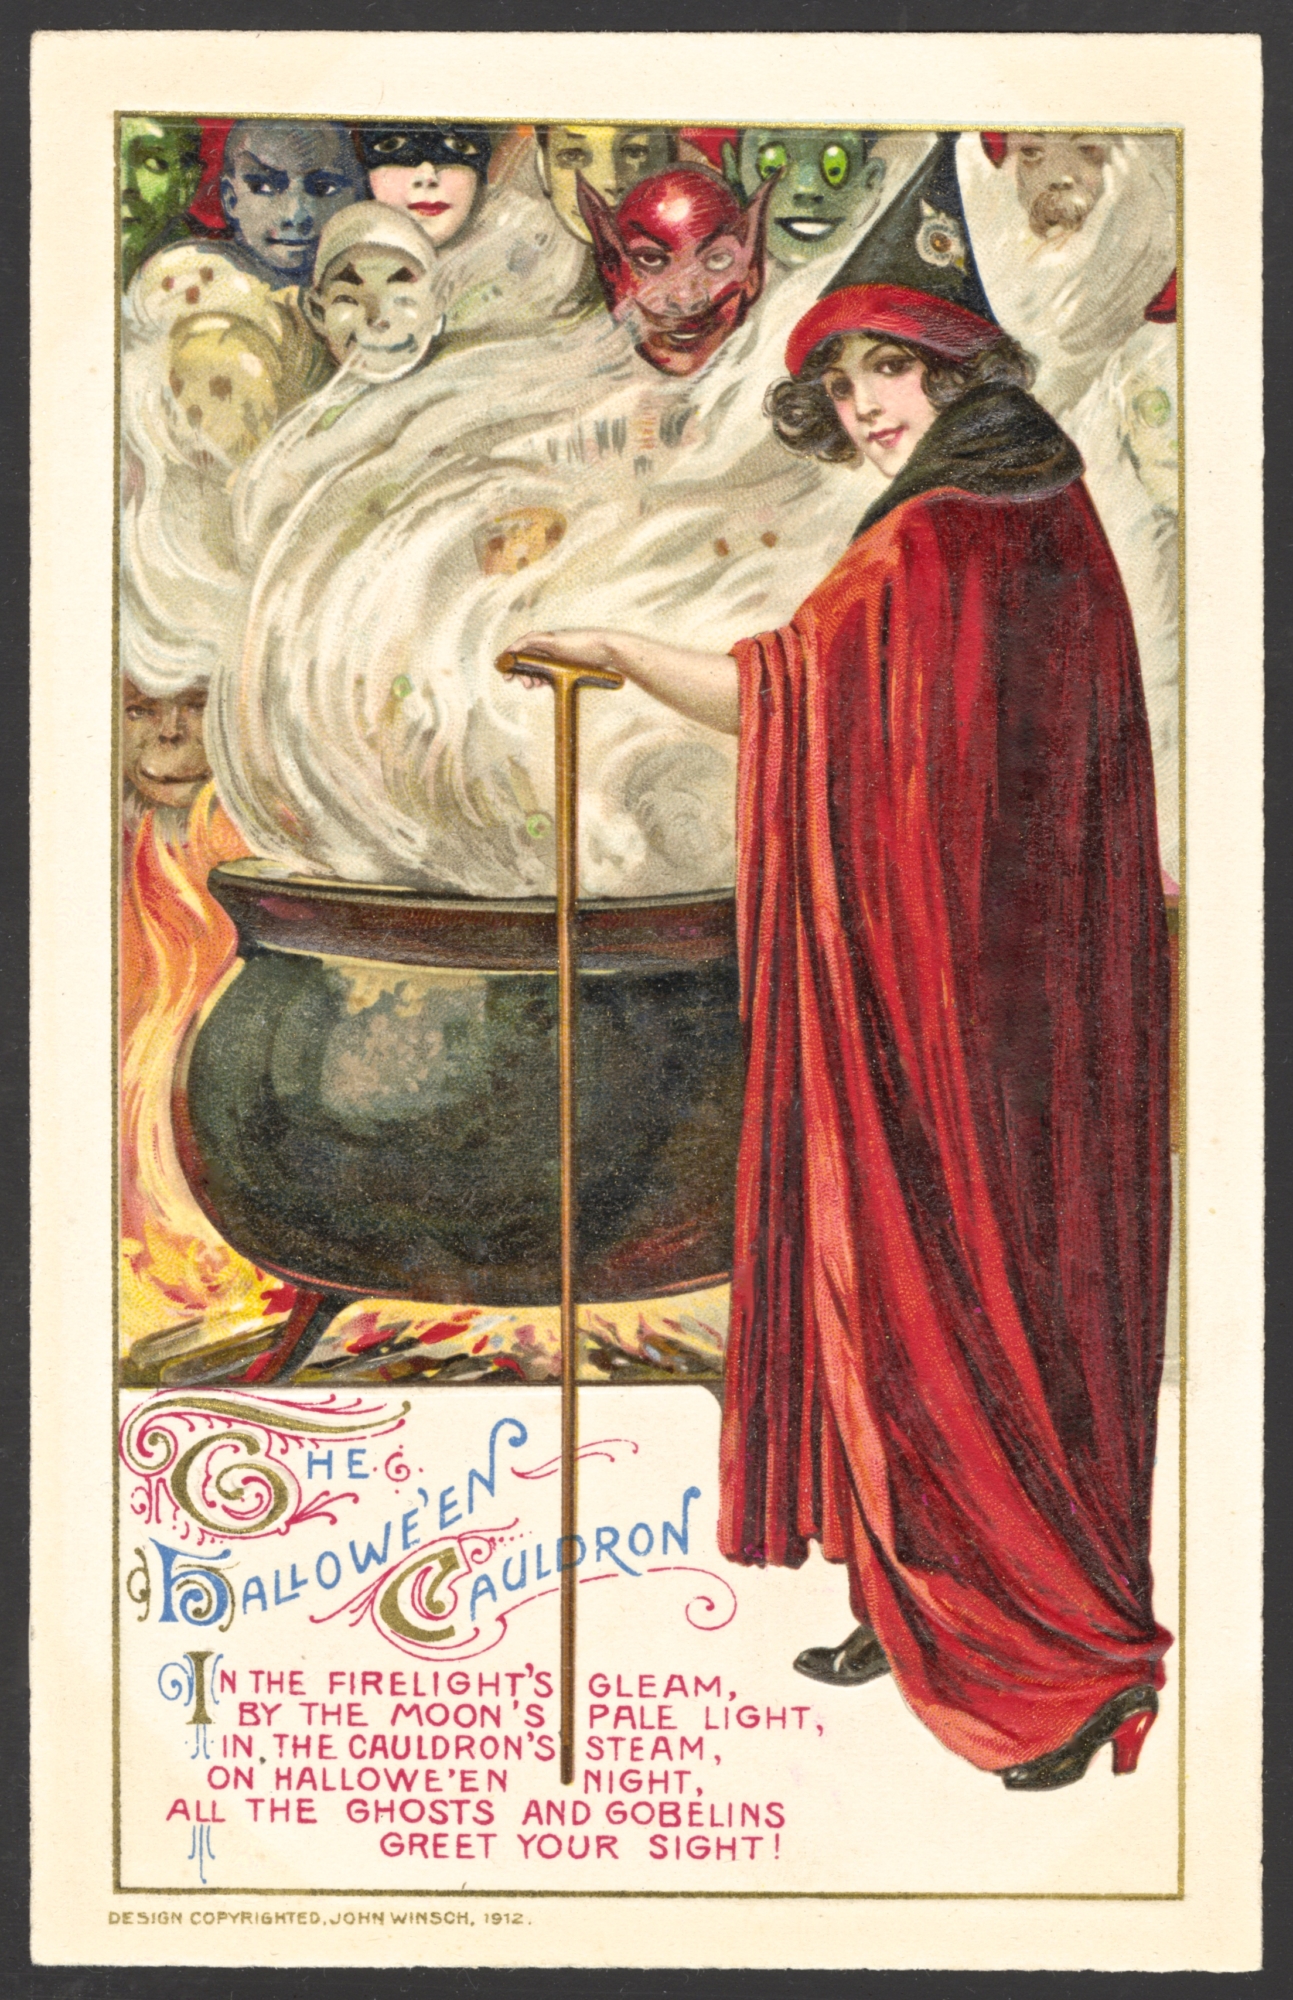 Winsch Halloween Postcard copyright 1912